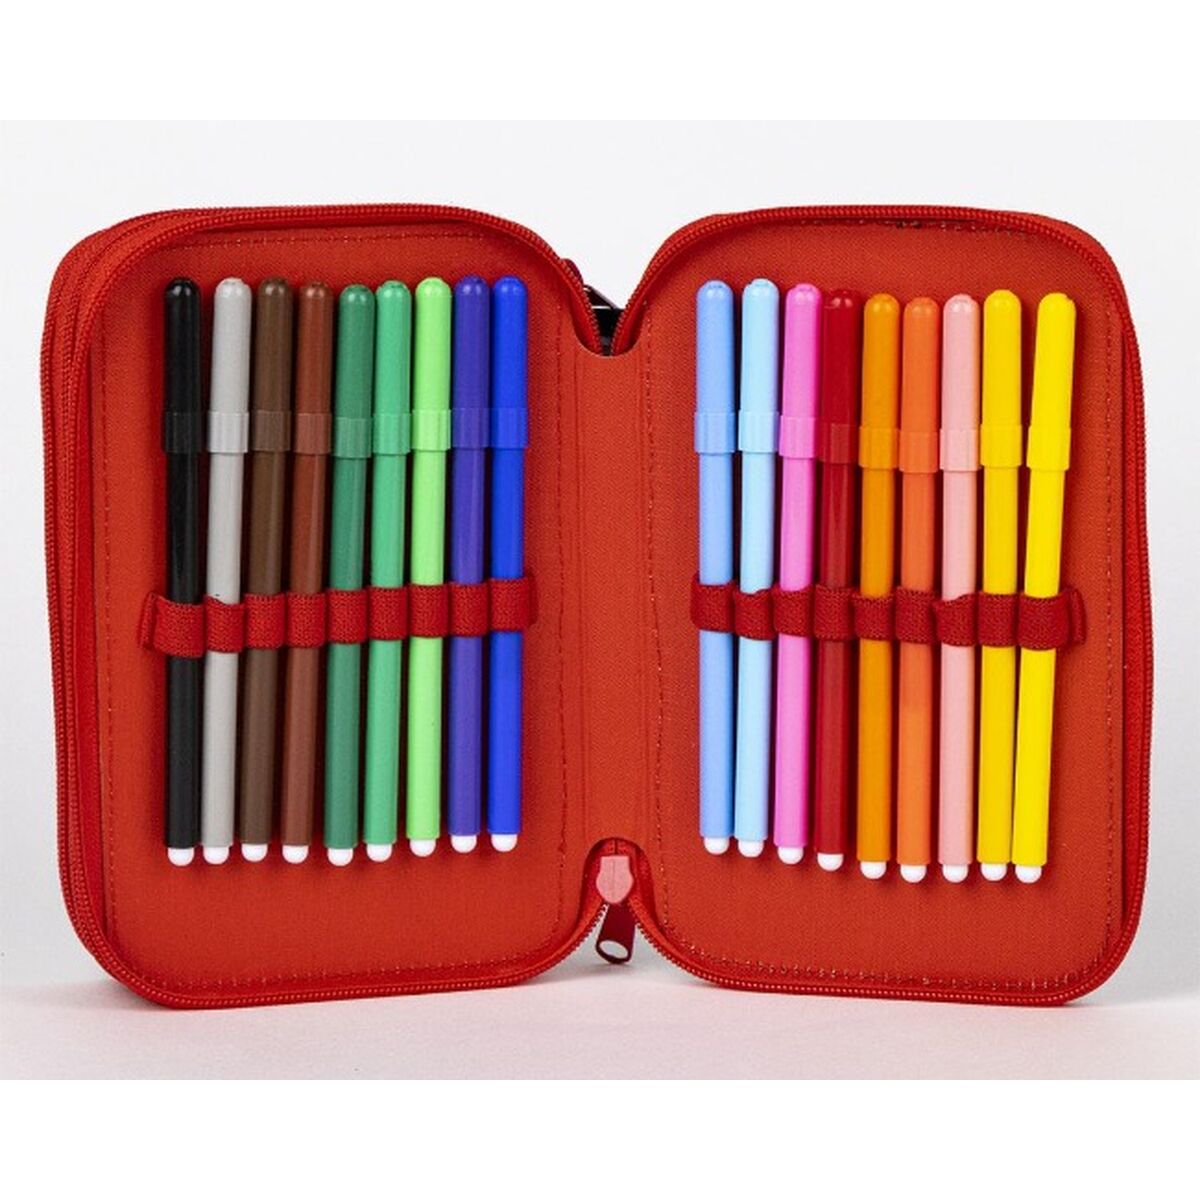 Triple Pencil Case The Avengers Red Black 13,5 x 7,5 x 20 cm-1